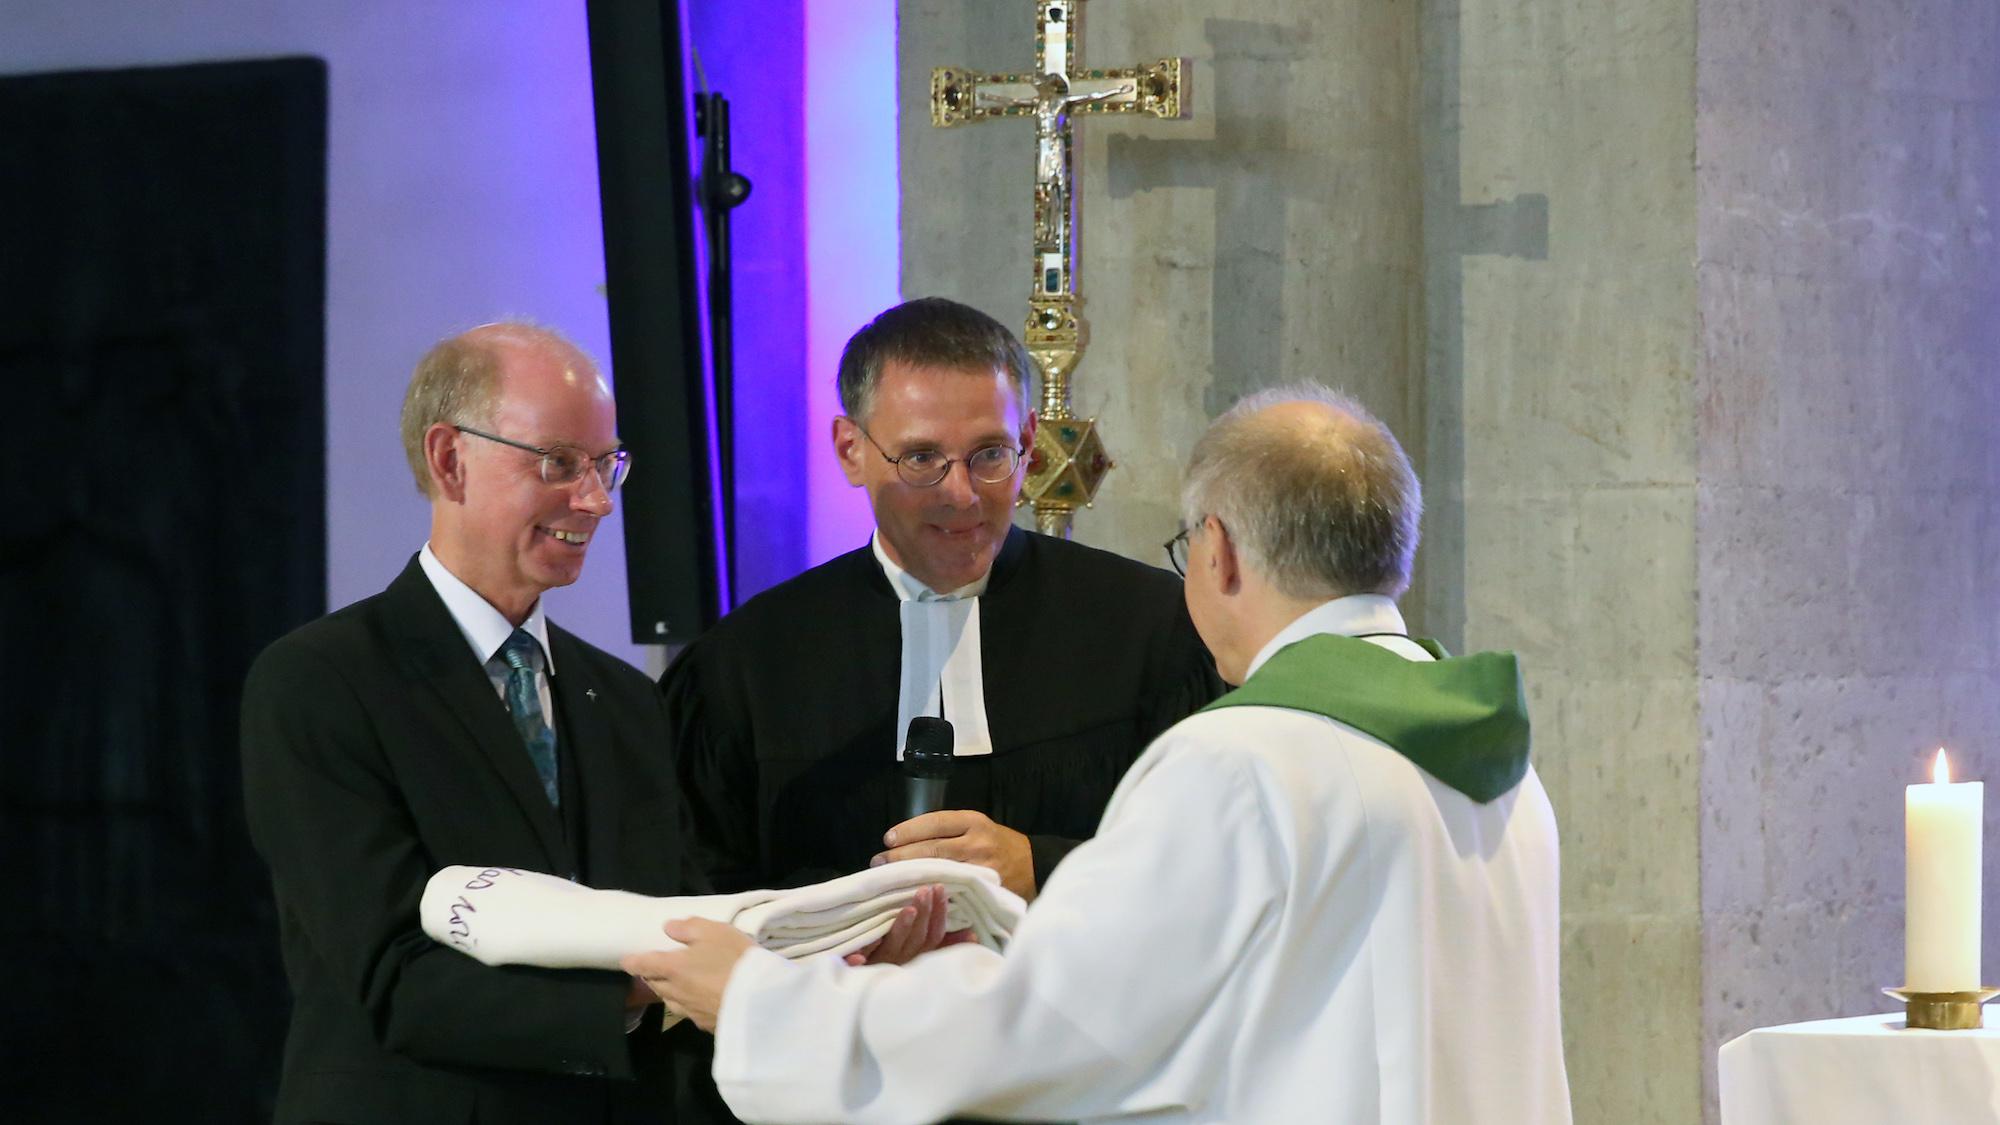 Propst Peter Blättler übergibt das Mönchengladbacher Altartuch an die evangelischen Geschwister Pfarrer Stephan Dedring (l.) und Pfarrer Till Hüttenberger. (c) Detlef Ilgner